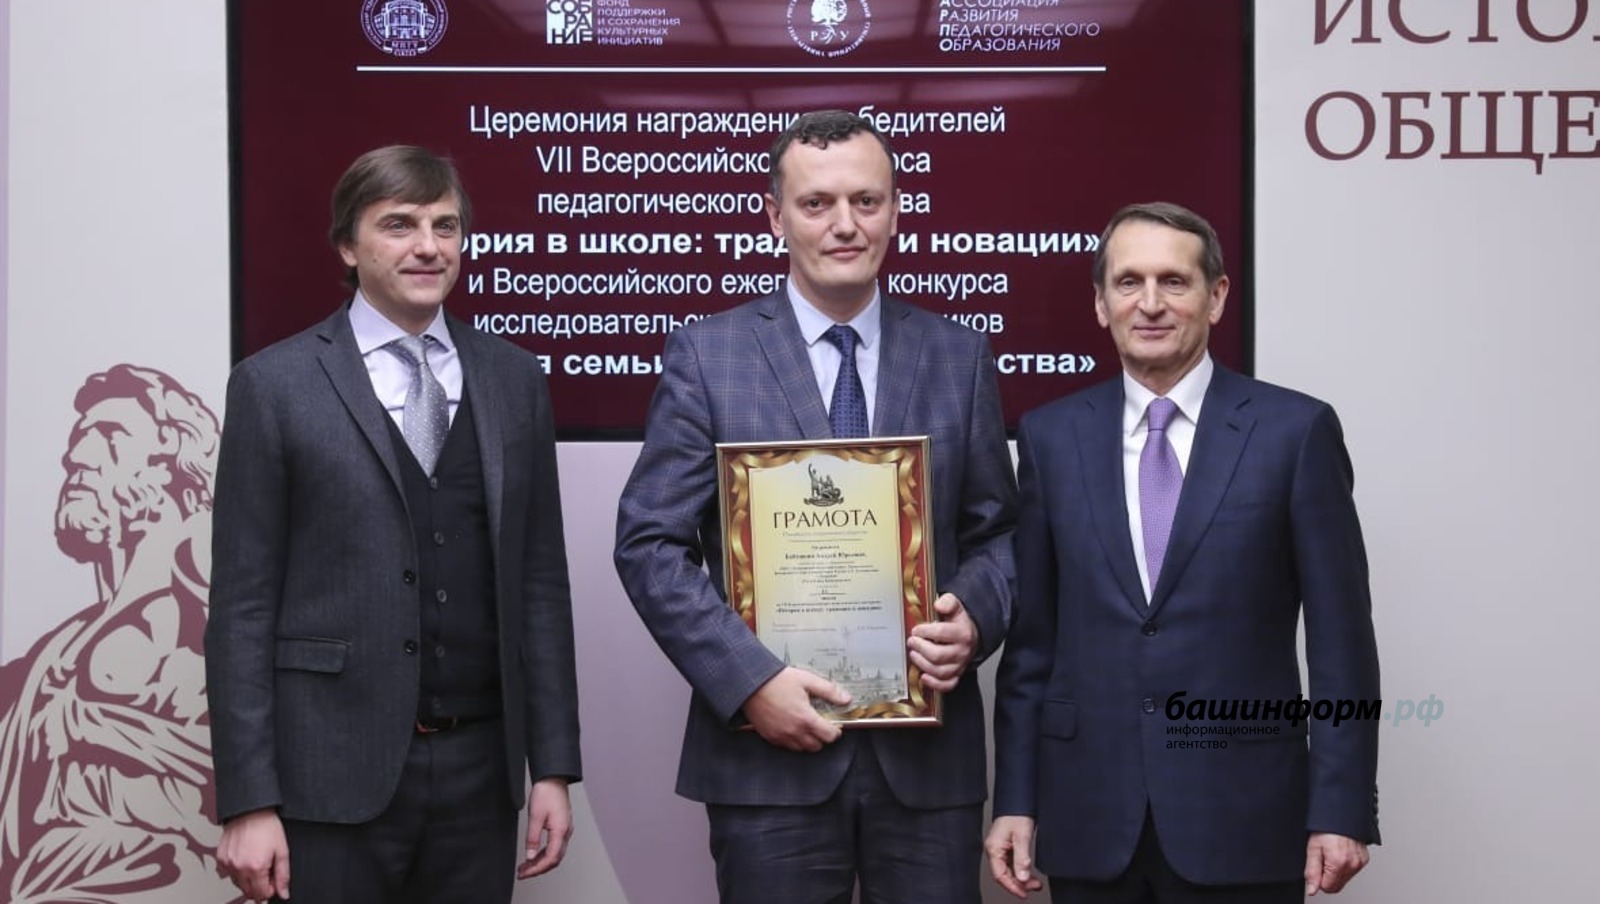 Победителем VII Всероссийского конкурса педагогического мастерства стал учитель истории из Башкирии